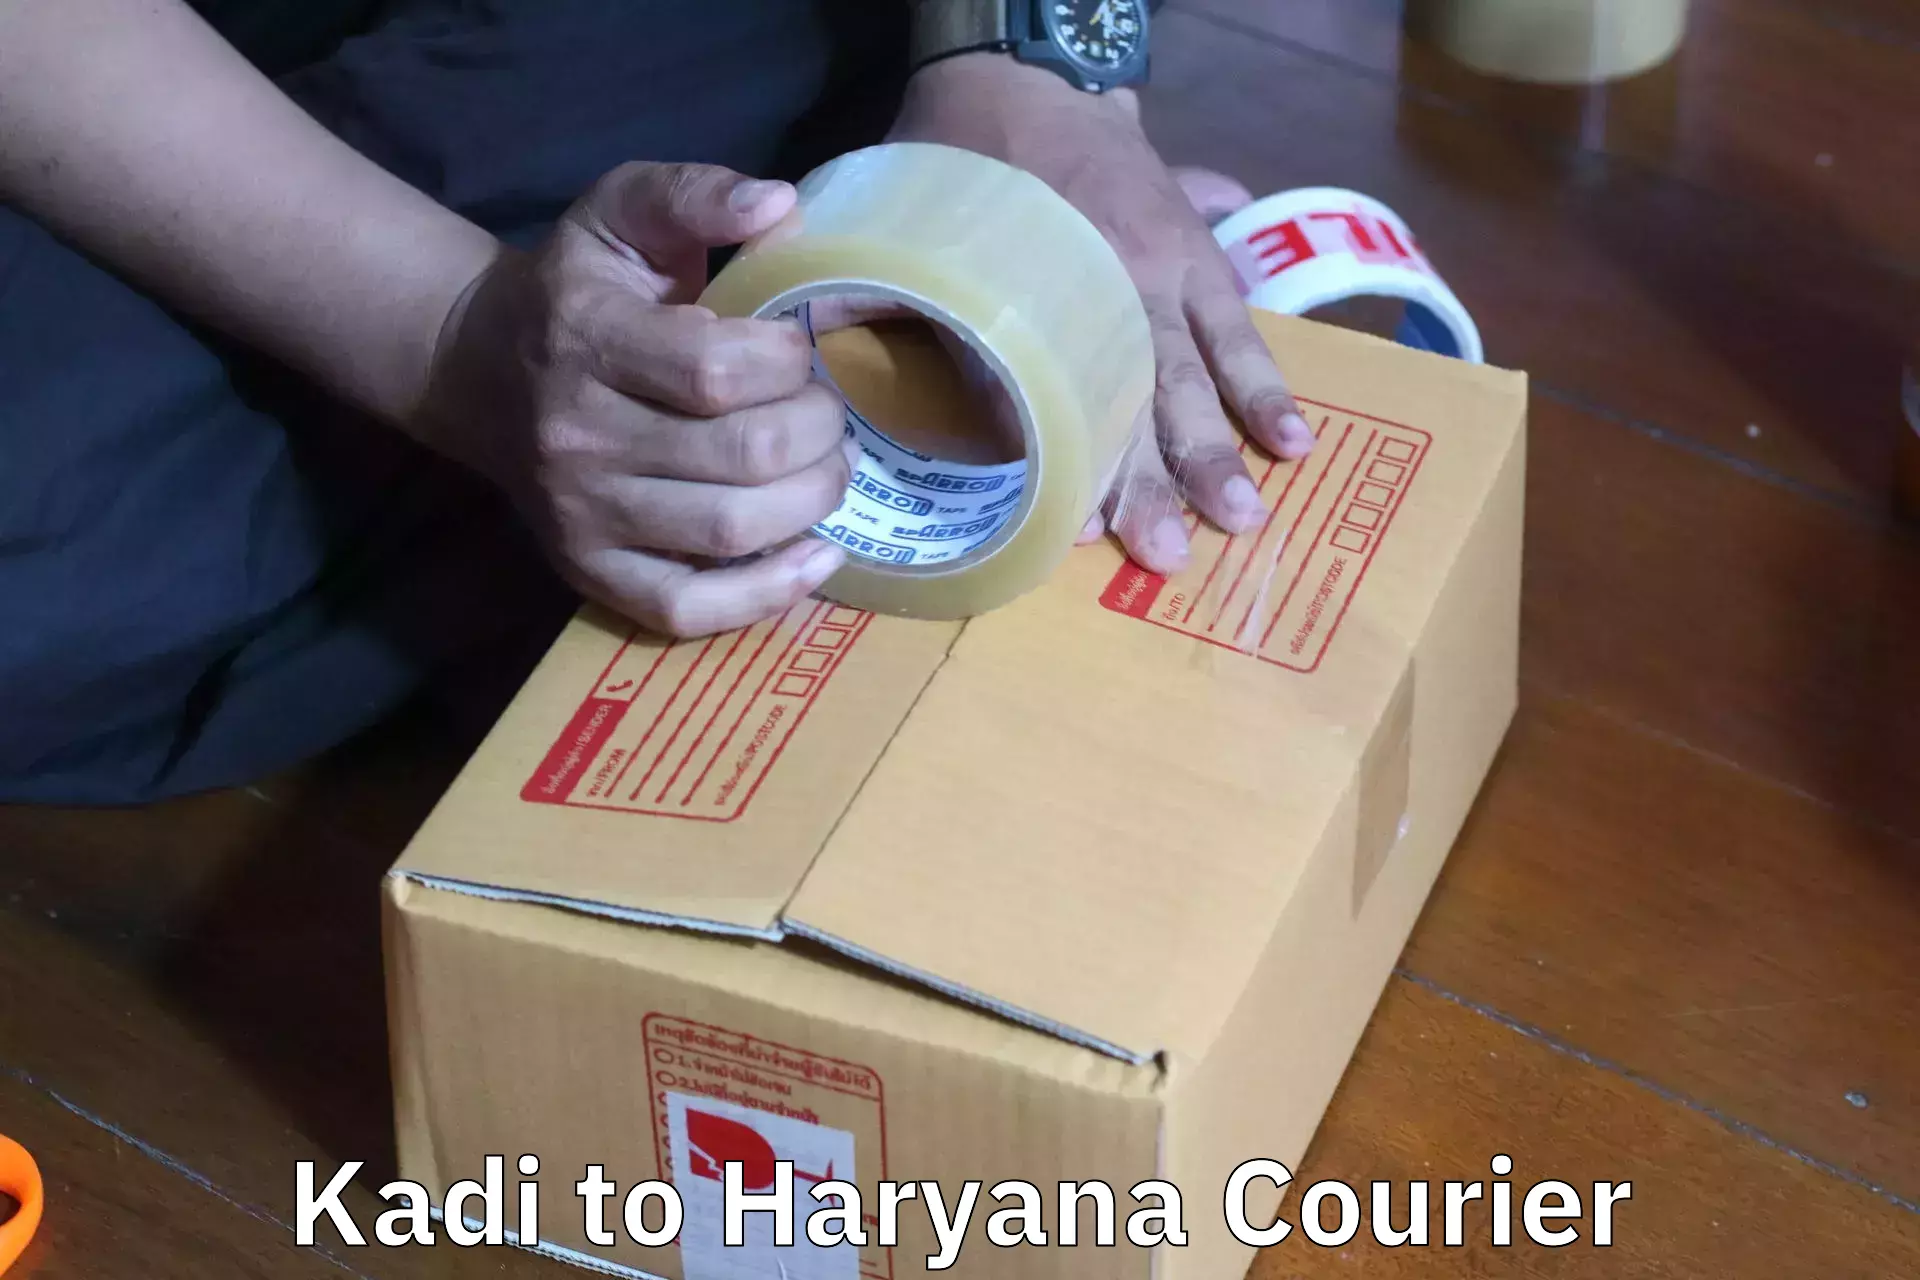 Efficient moving company Kadi to Haryana